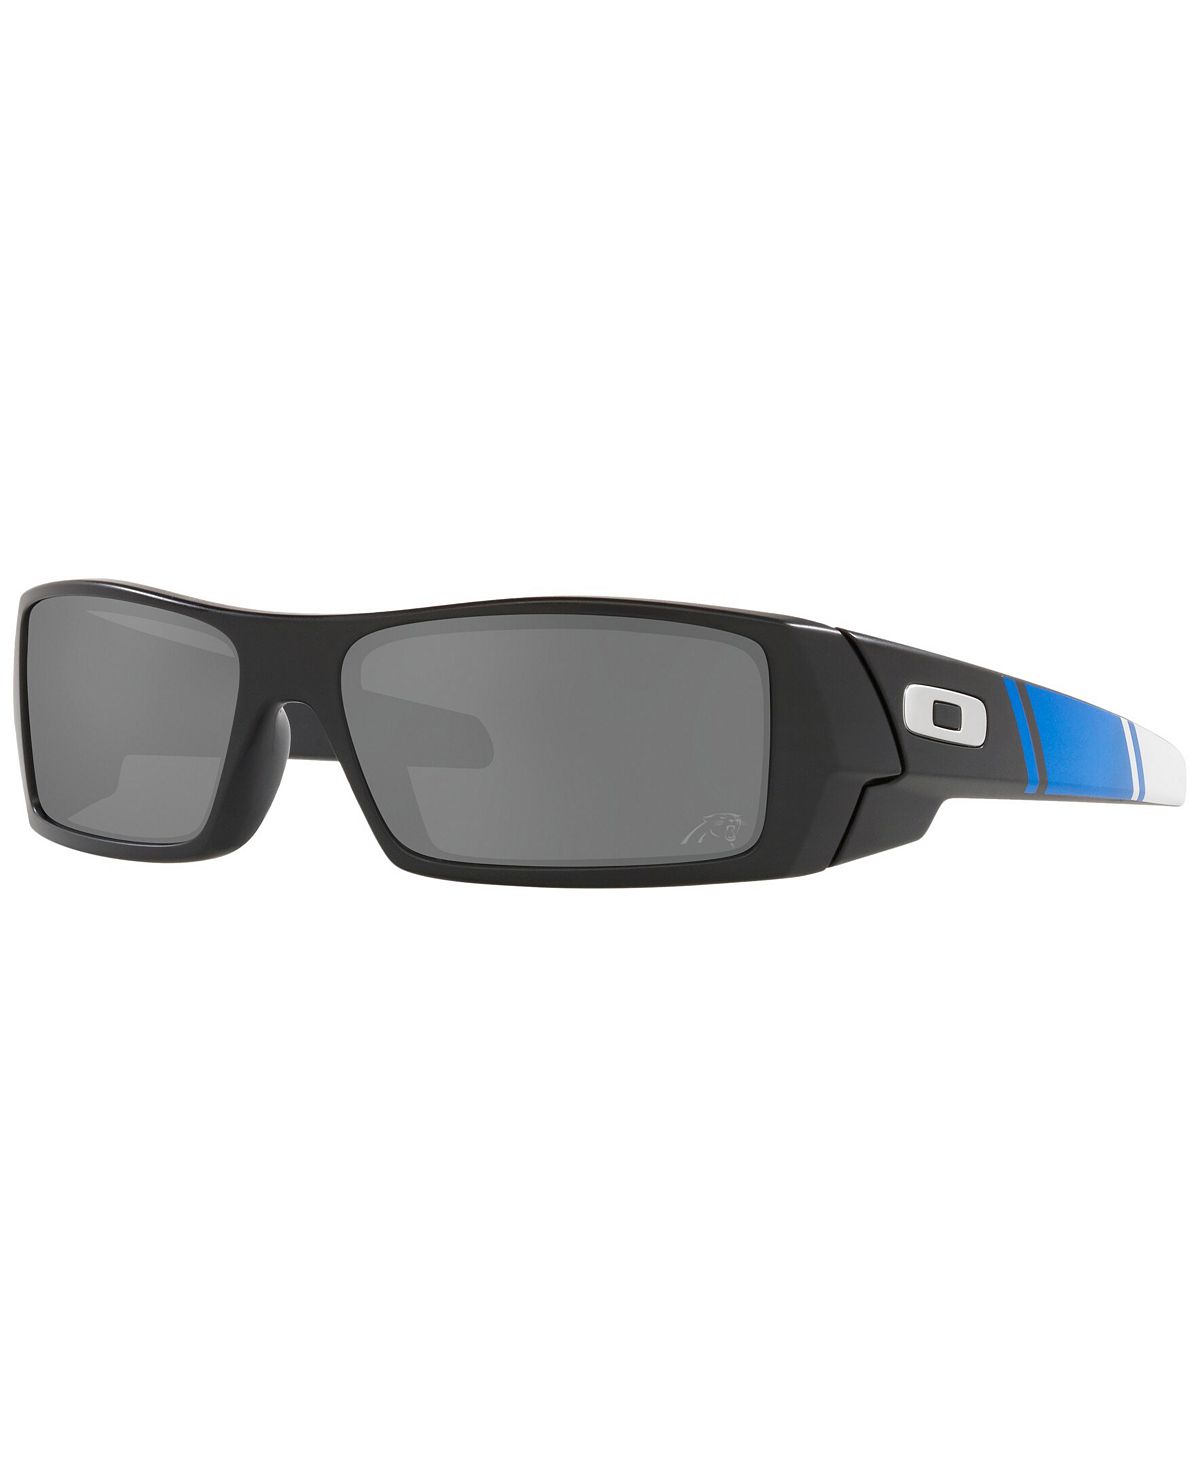 Мужские солнцезащитные очки NFL Collection, Carolina Panthers OO9014 60 GASCAN Oakley цена и фото